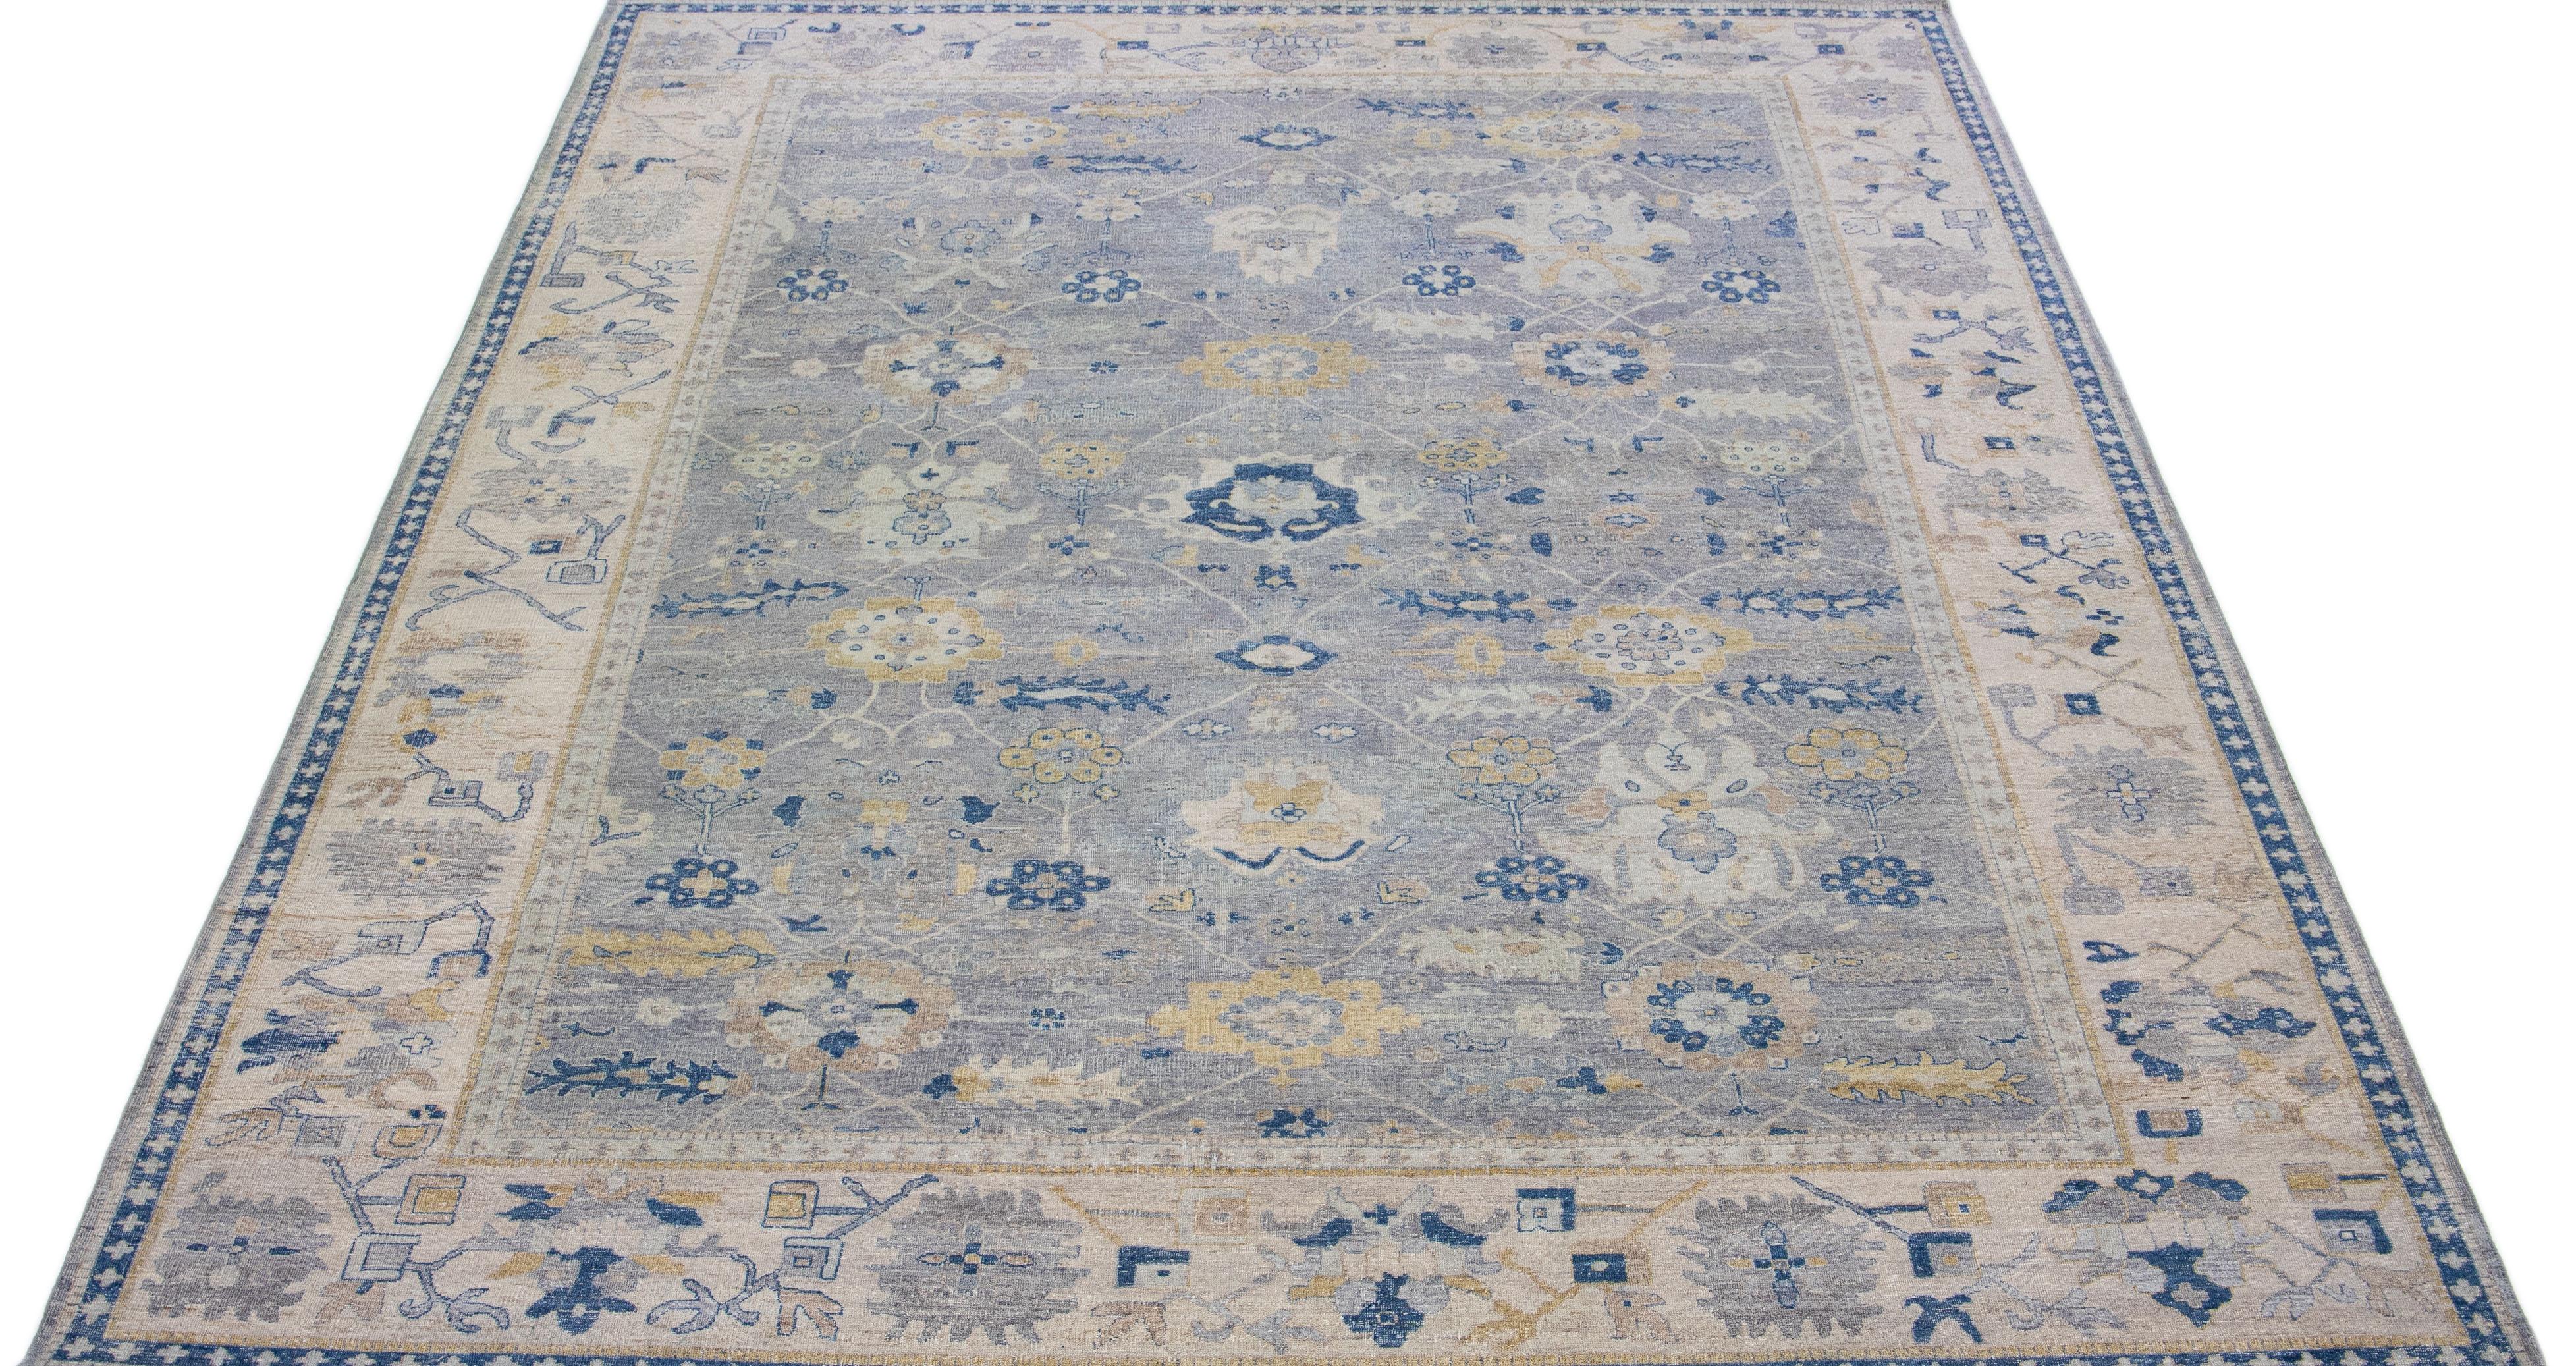 Die Artisan-Linie von Apadana ist eine Neuinterpretation antiker Teppiche, die auf elegante Weise eine auffällige antike Ästhetik in einen Raum bringt. Diese Teppichserie ist ausgesprochen einzigartig und zeigt, wie ein antiker Teppich aussehen